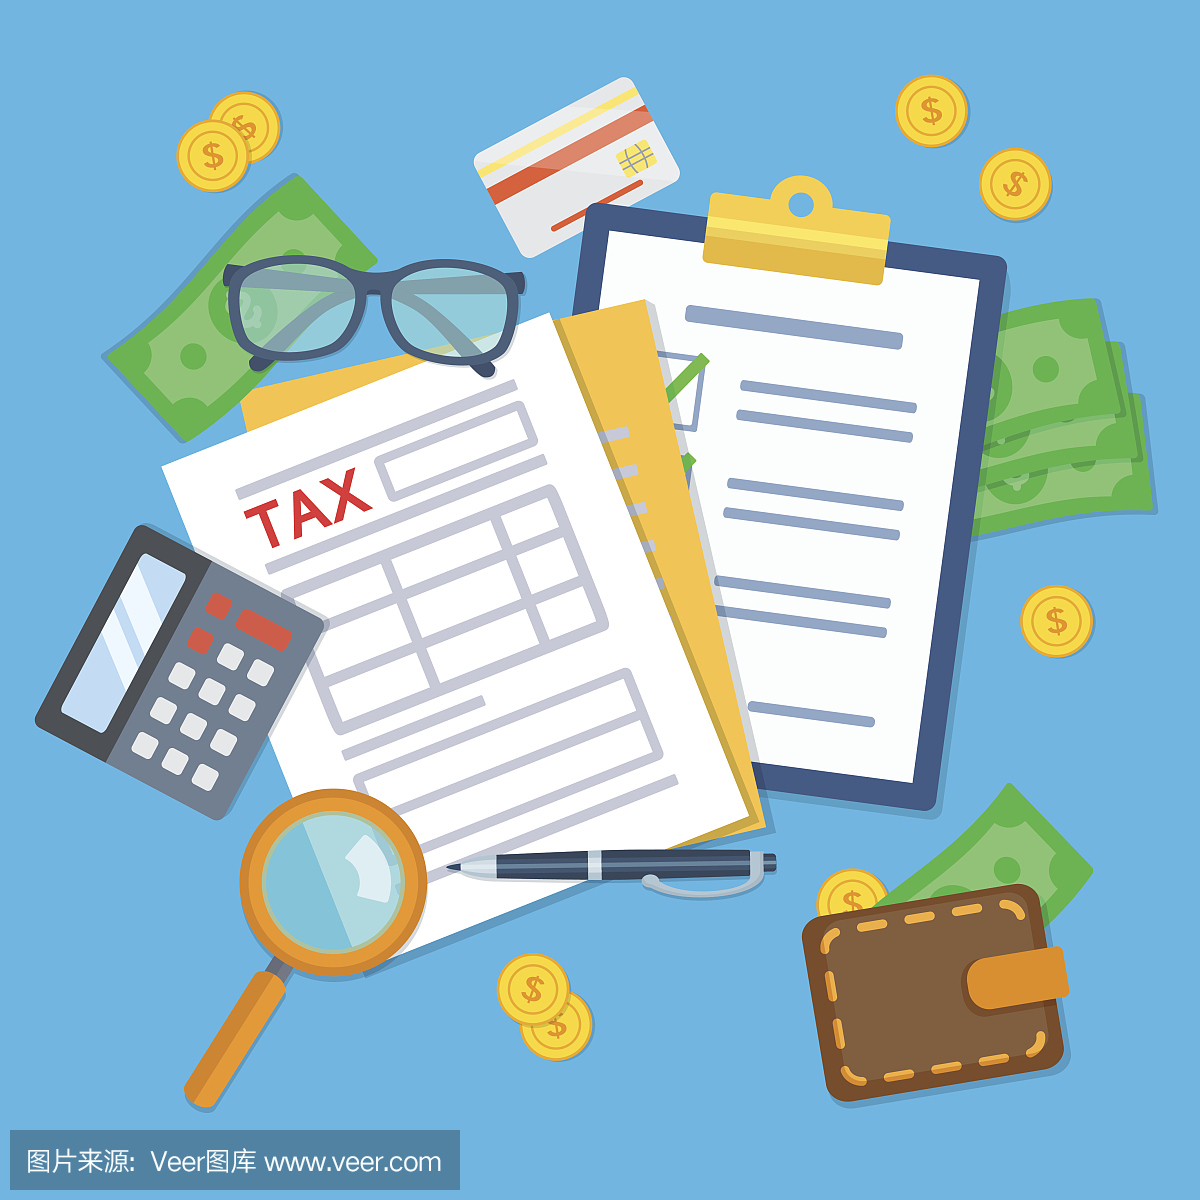 税表与计算器,笔,眼镜,信用卡和美元钞票。